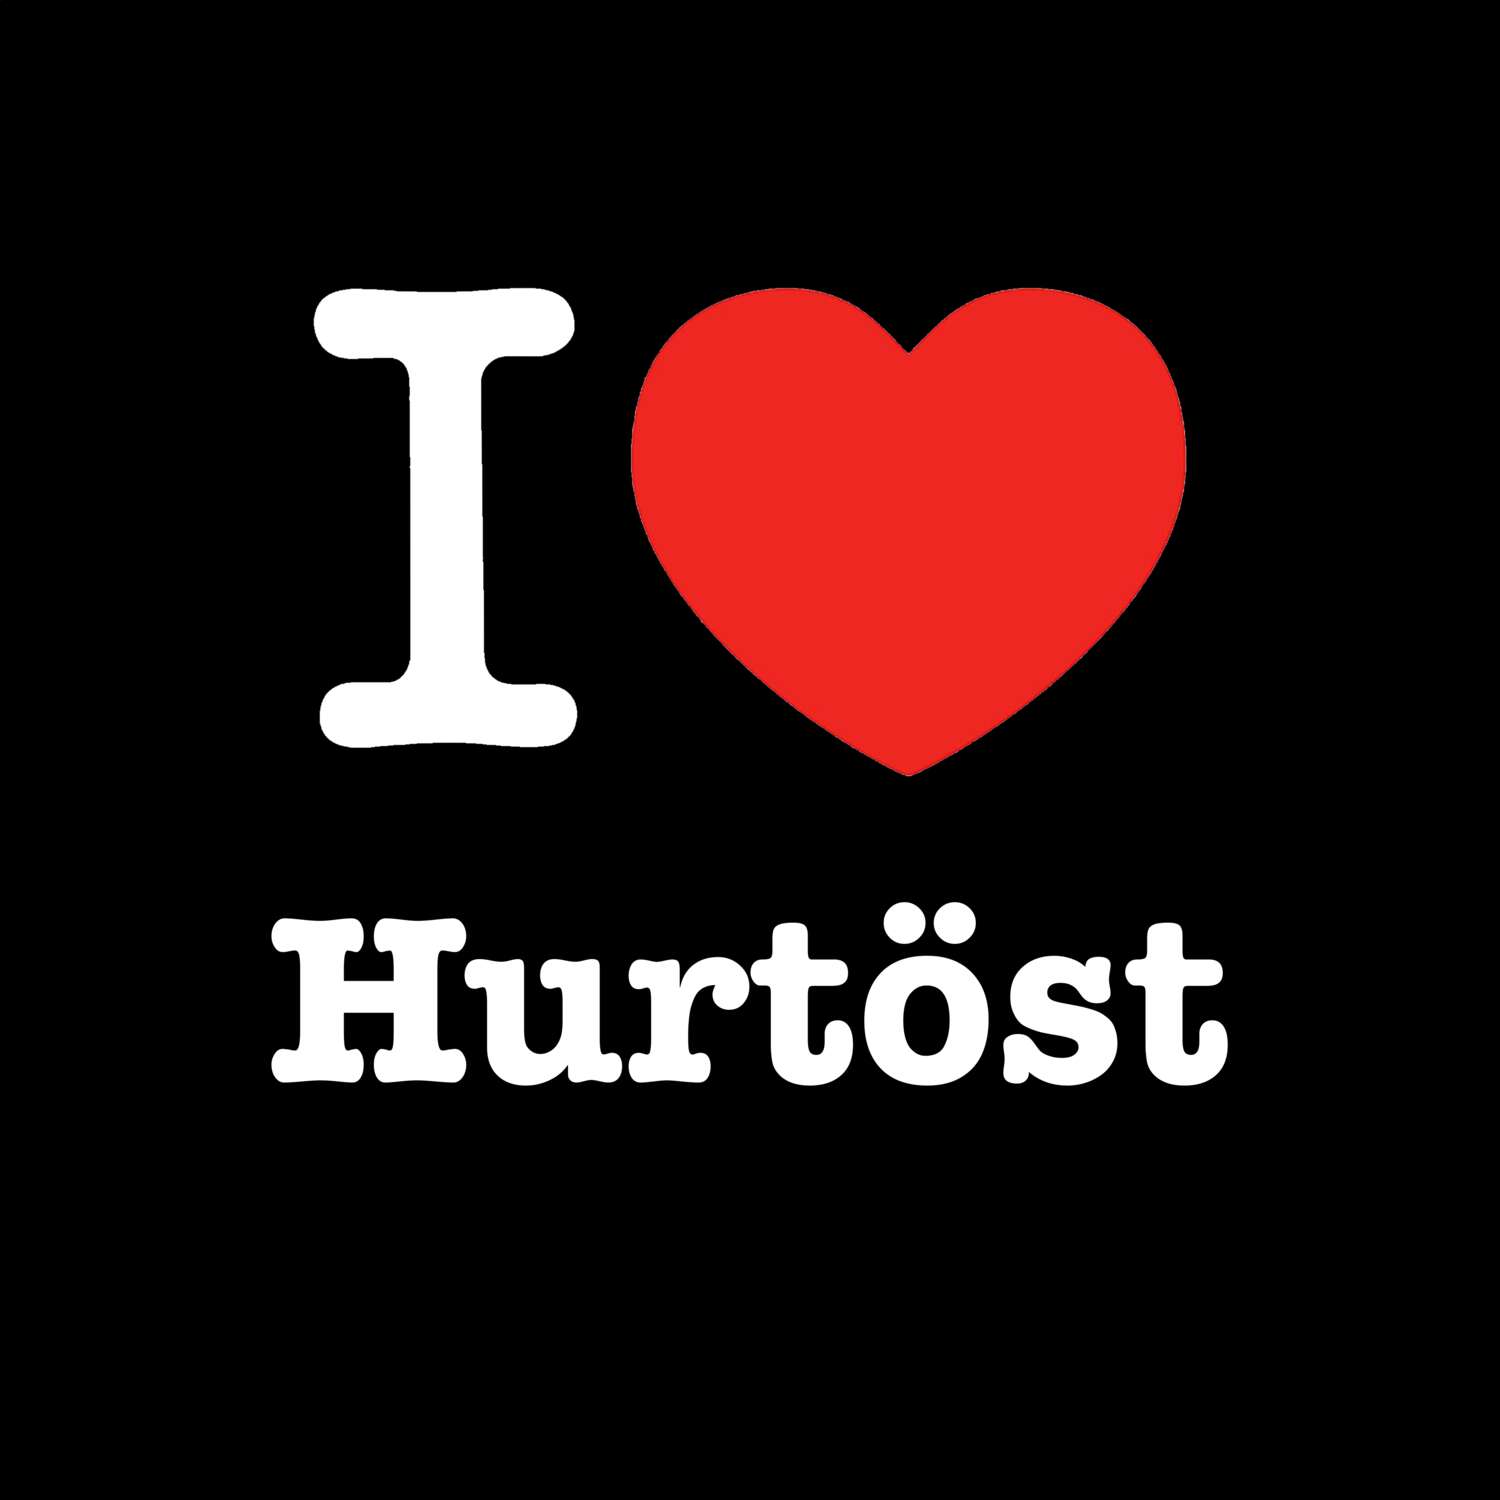 Hurtöst T-Shirt »I love«